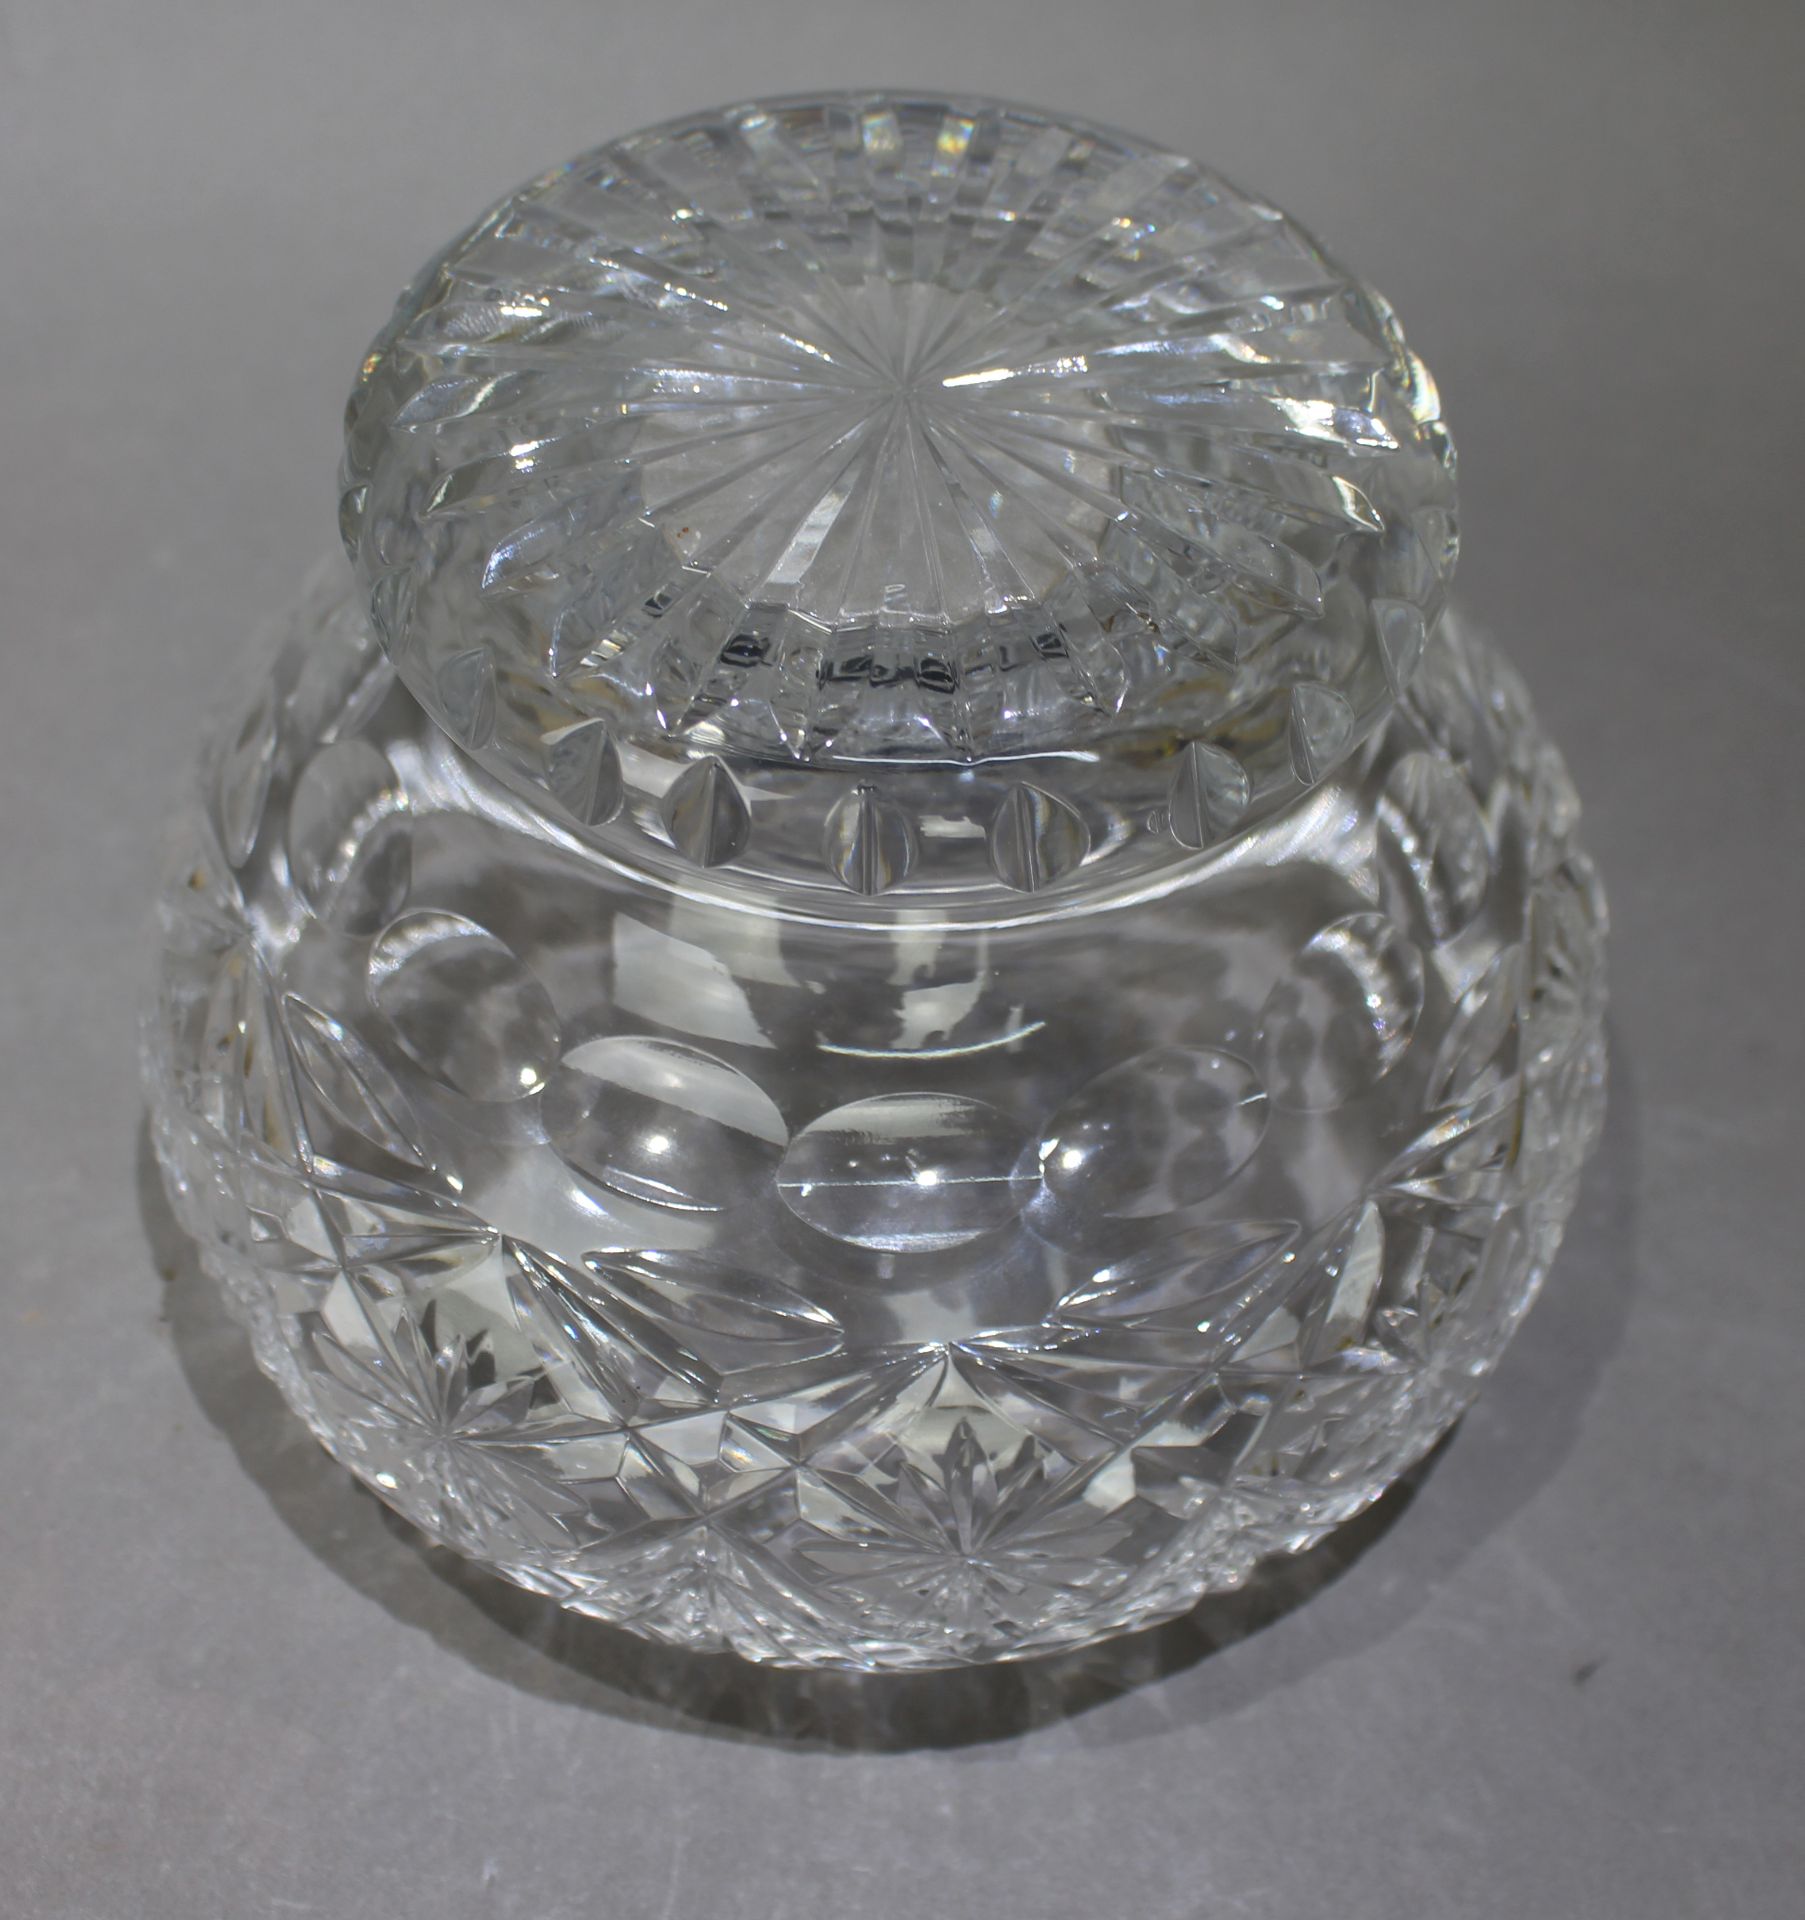 Vintage Cut Glass Crystal Rose Bowl - Image 4 of 4